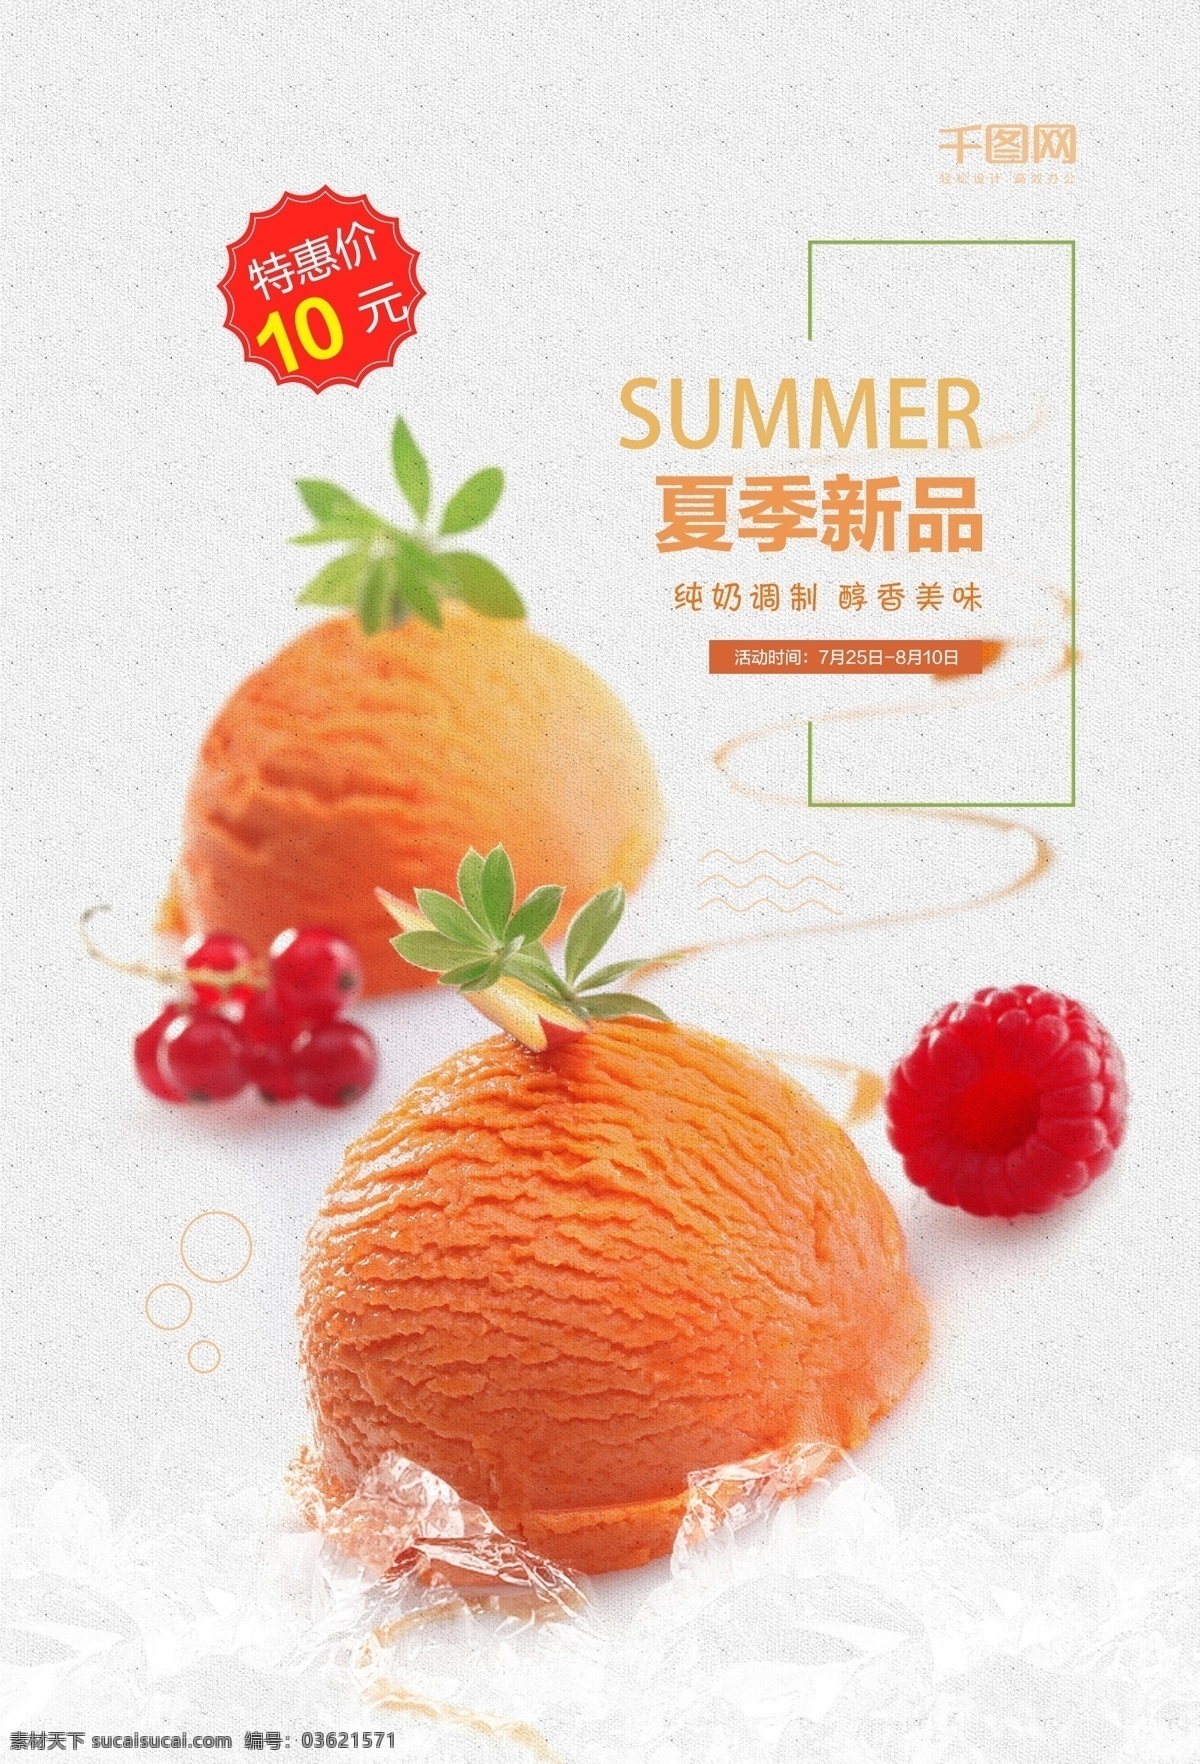 冰淇凌 美食 海报 夏日 凉爽 水果味 促销 冰激凌